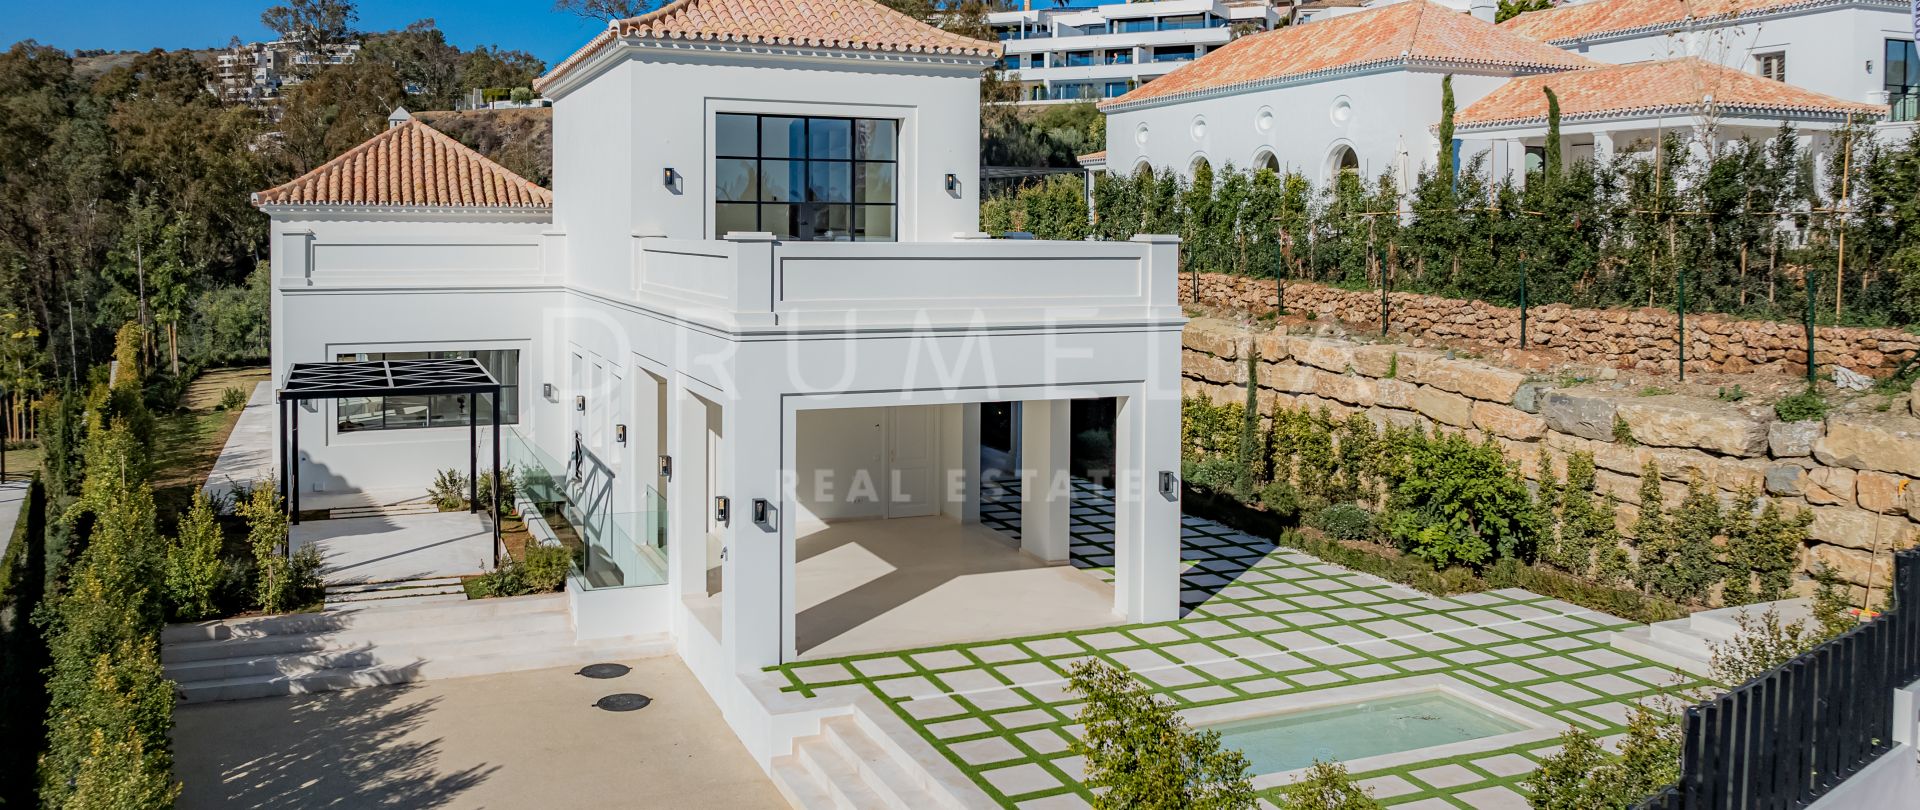 Elegante Villa con Piscina de Estilo Provincial Francés en La Cerquilla, Marbella